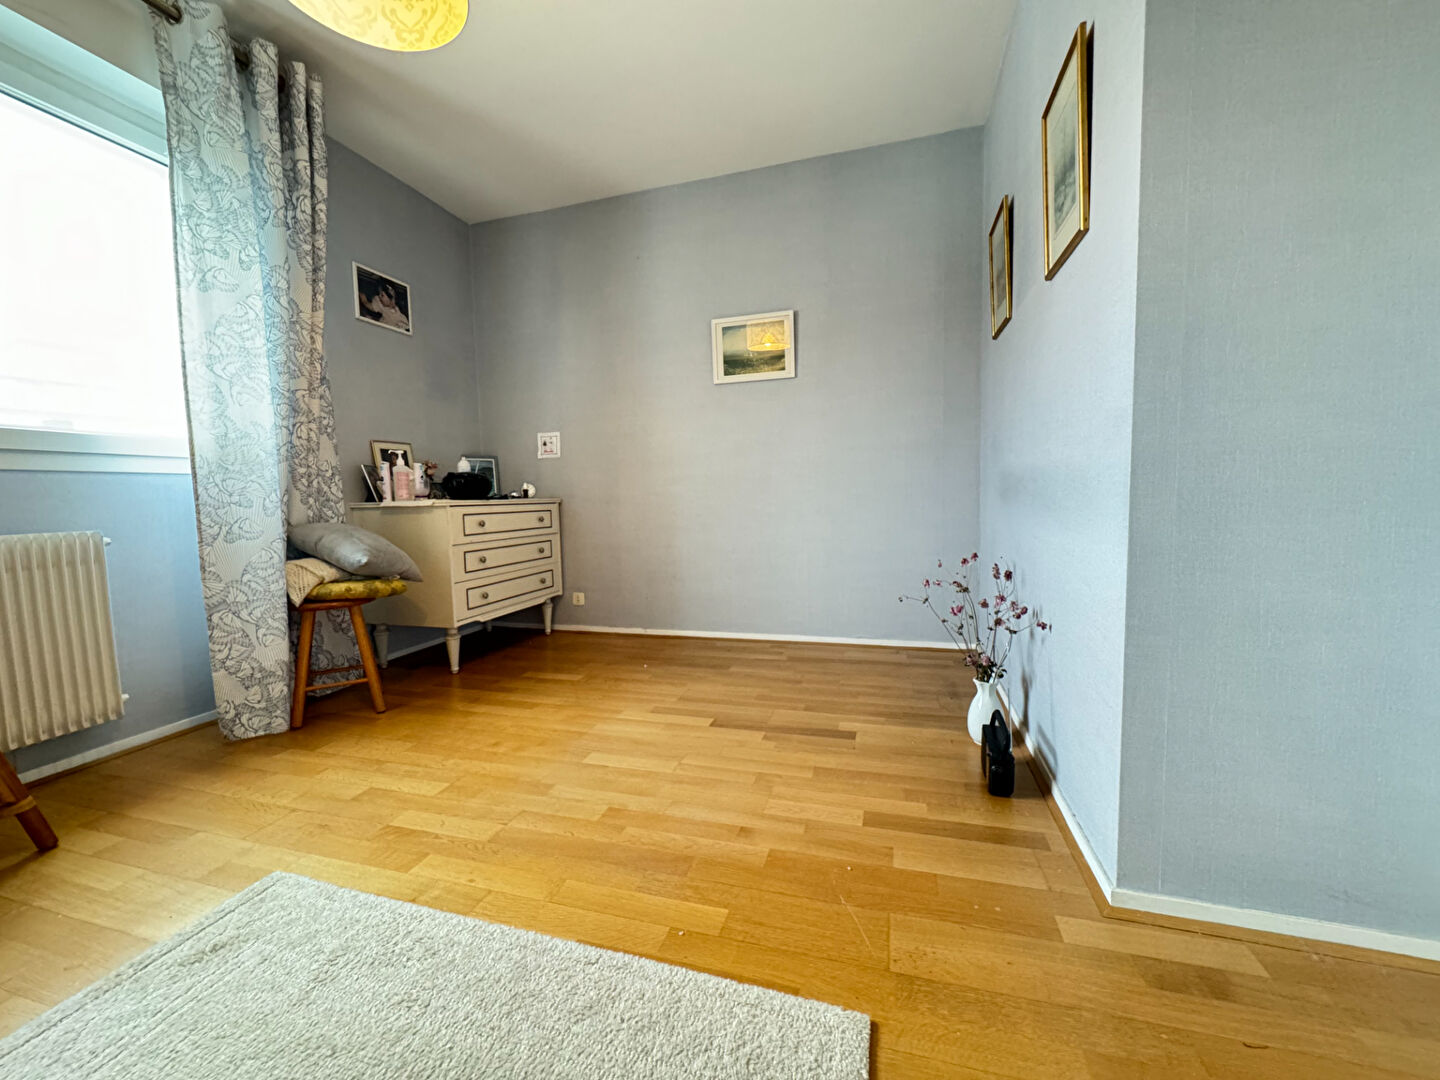 Appartement 3 pièces - 68 m² environ - 54846687i.jpg | Kermarrec Habitation